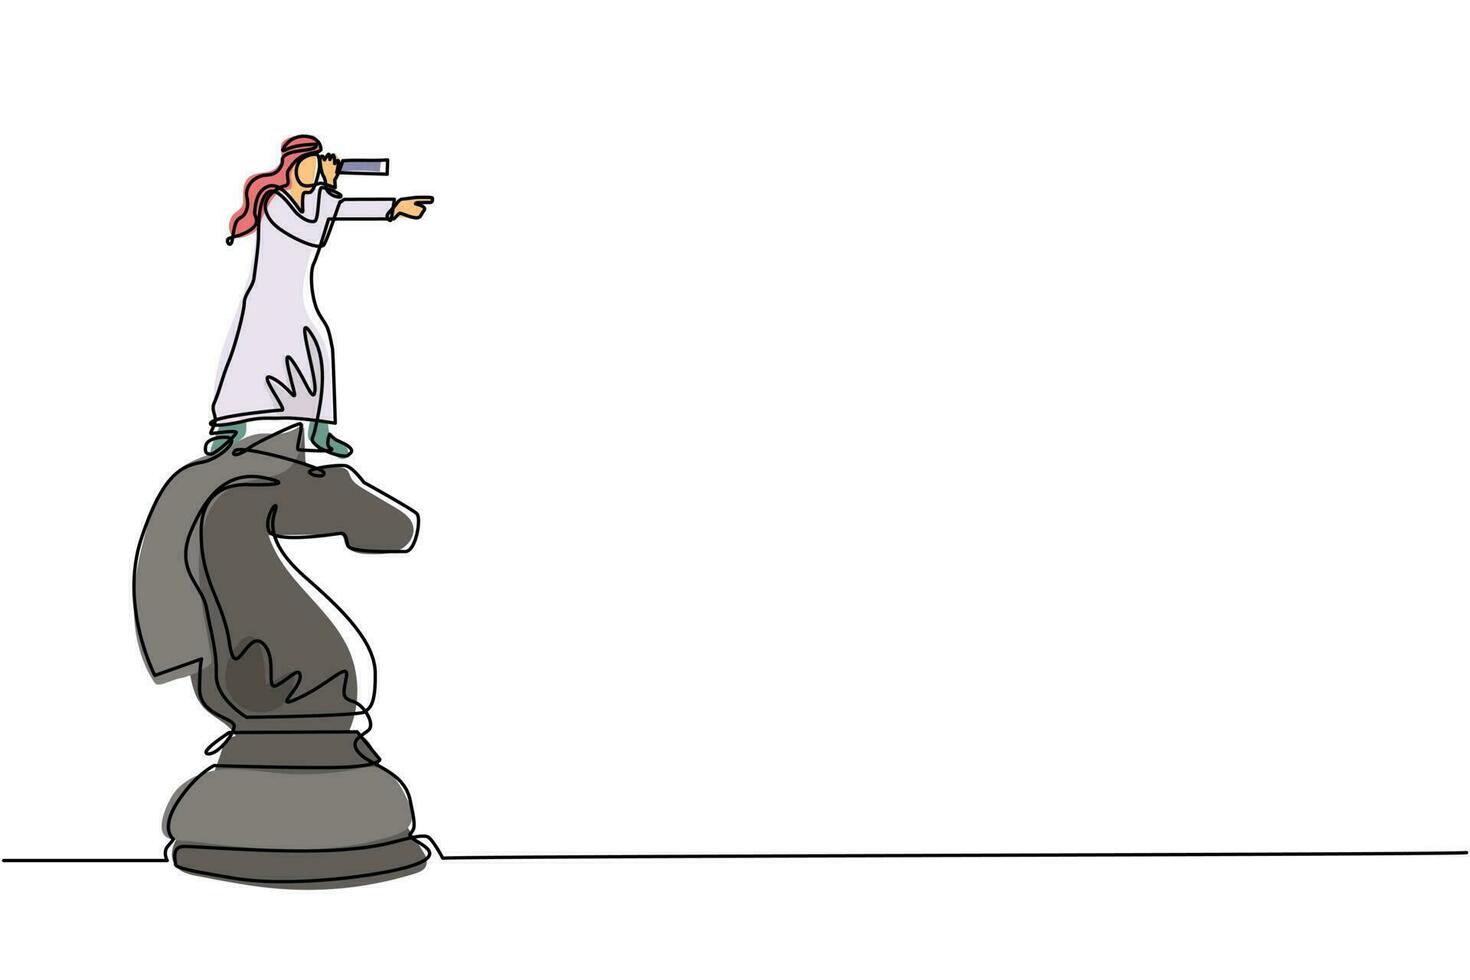 una sola línea continua dibujando a un hombre de negocios árabe encima de una gran pieza de ajedrez de caballos usando un telescopio en busca de éxito, oportunidades, futuras tendencias comerciales. ilustración de vector de diseño de dibujo de una línea